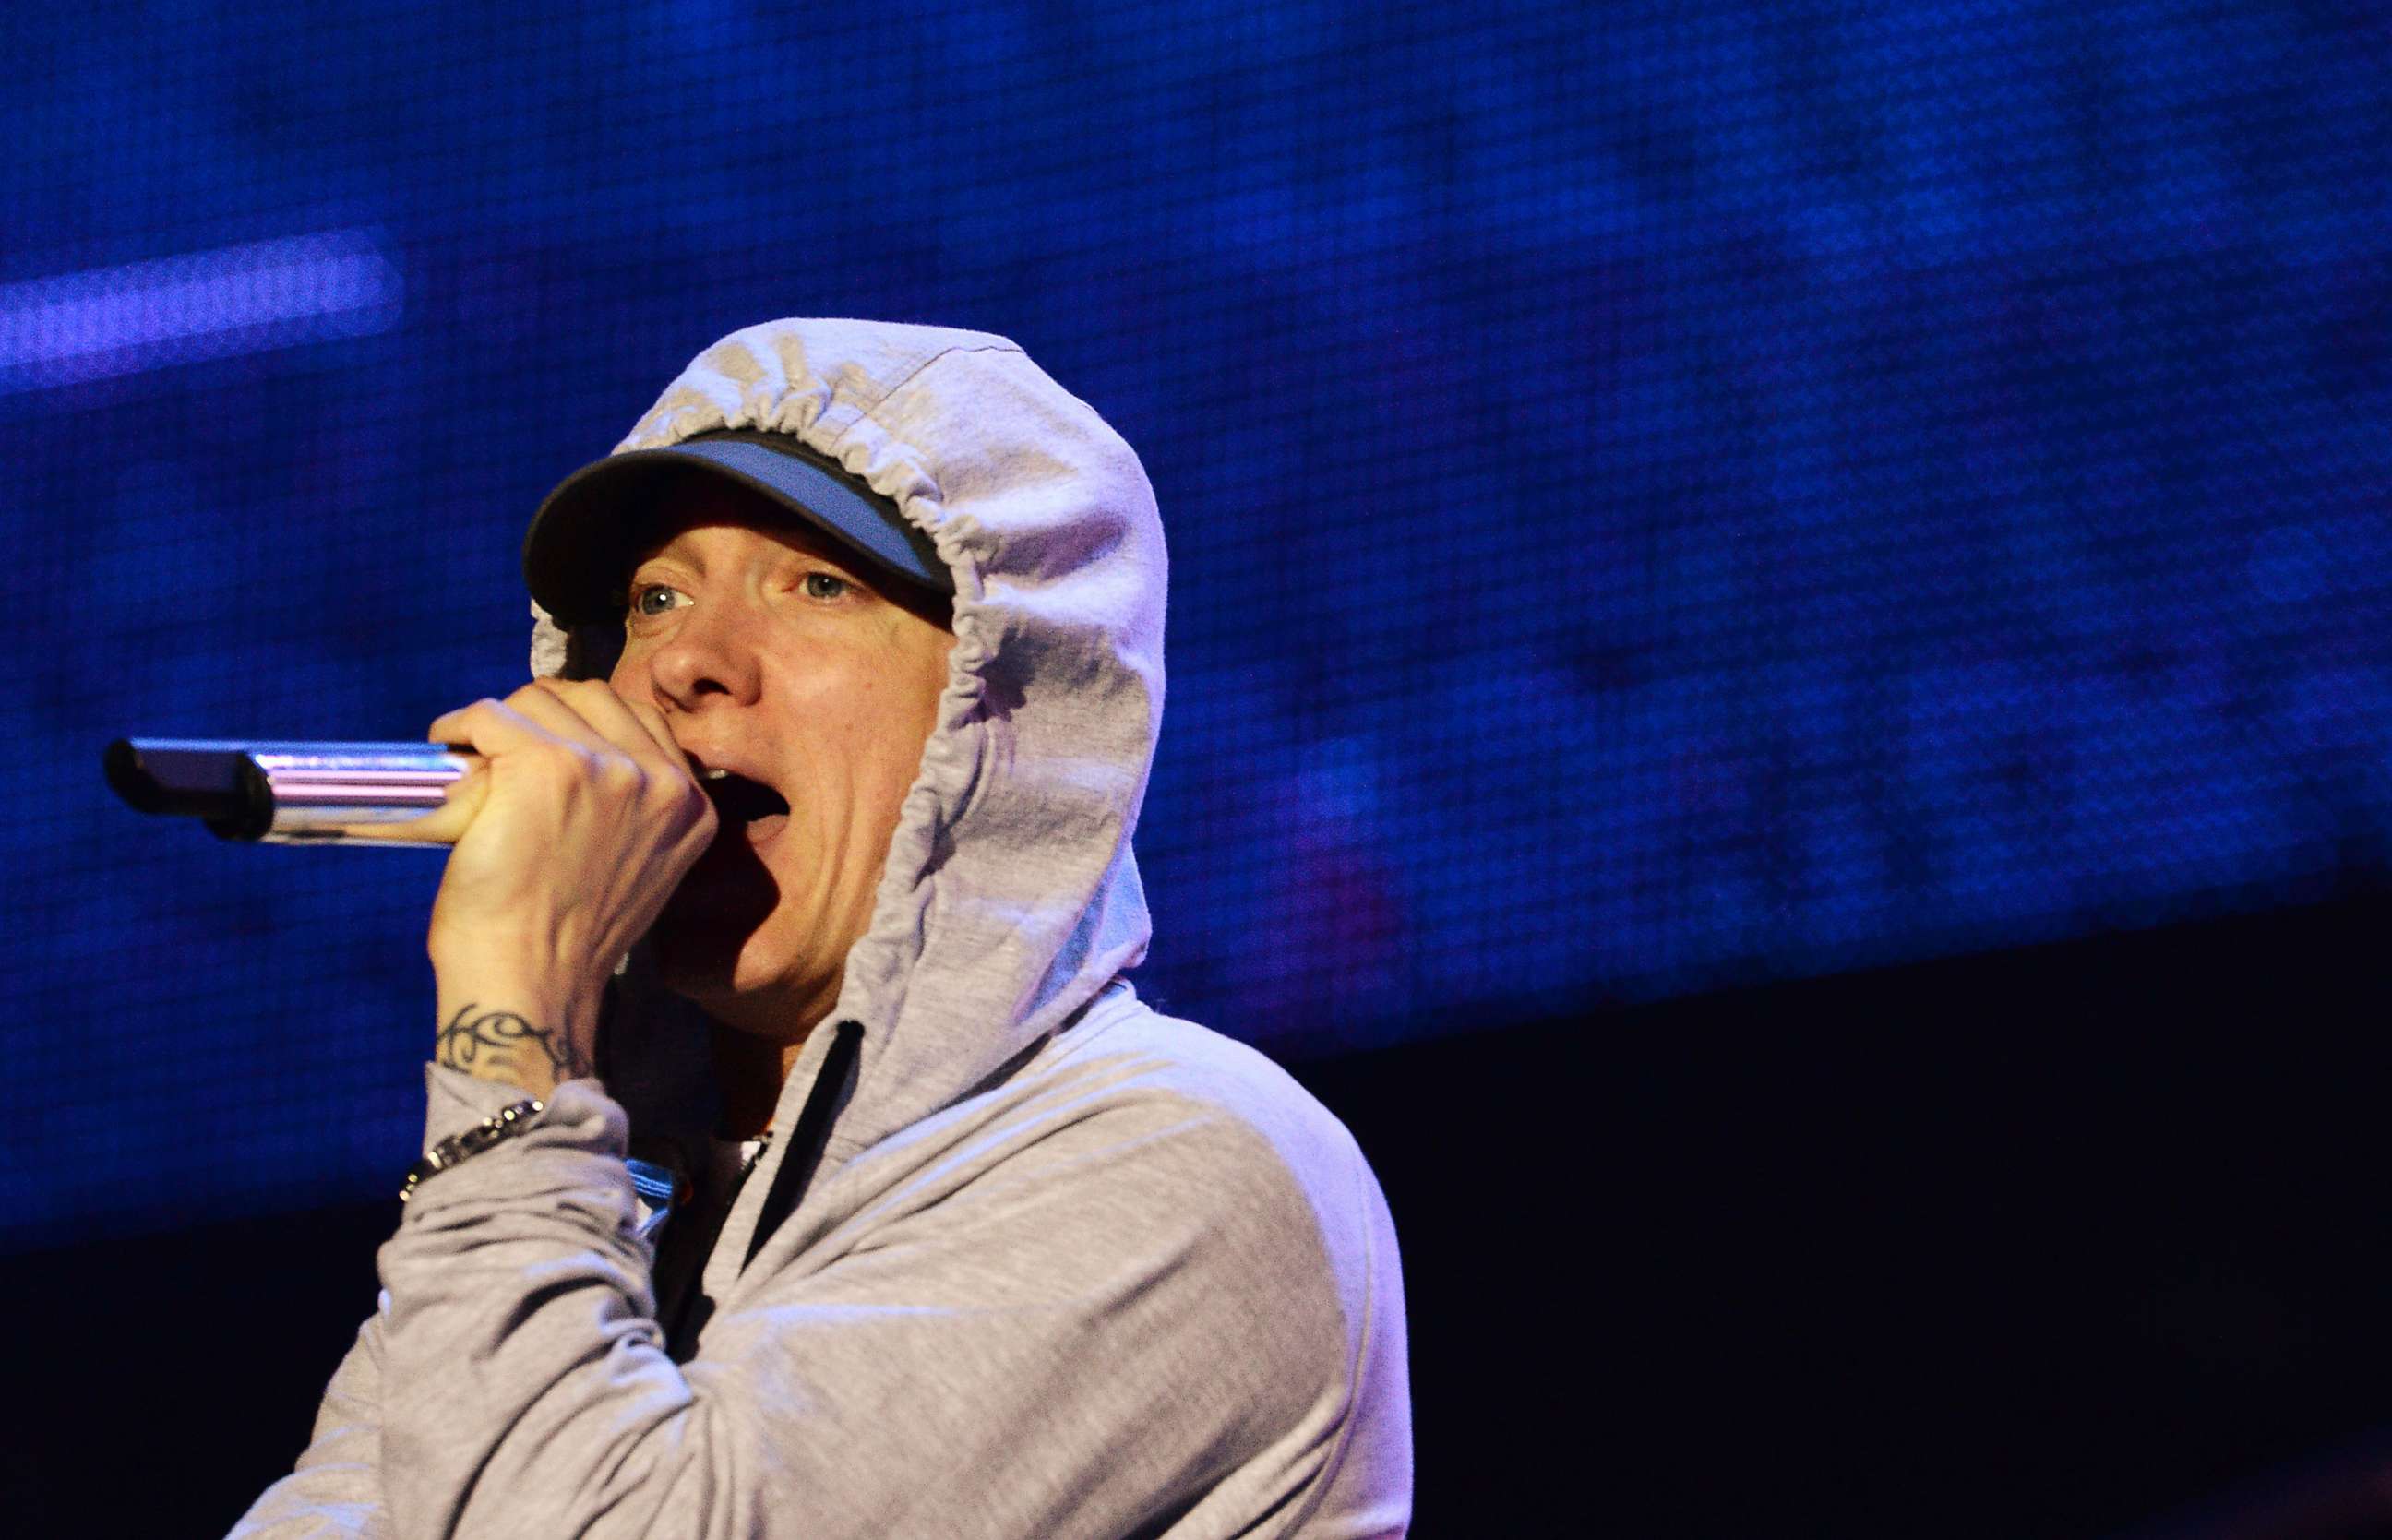 PHOTO: Rapper Eminem performs during a concert at the Stade de France in Saints-Denis, near Paris, Aug. 22, 2013.